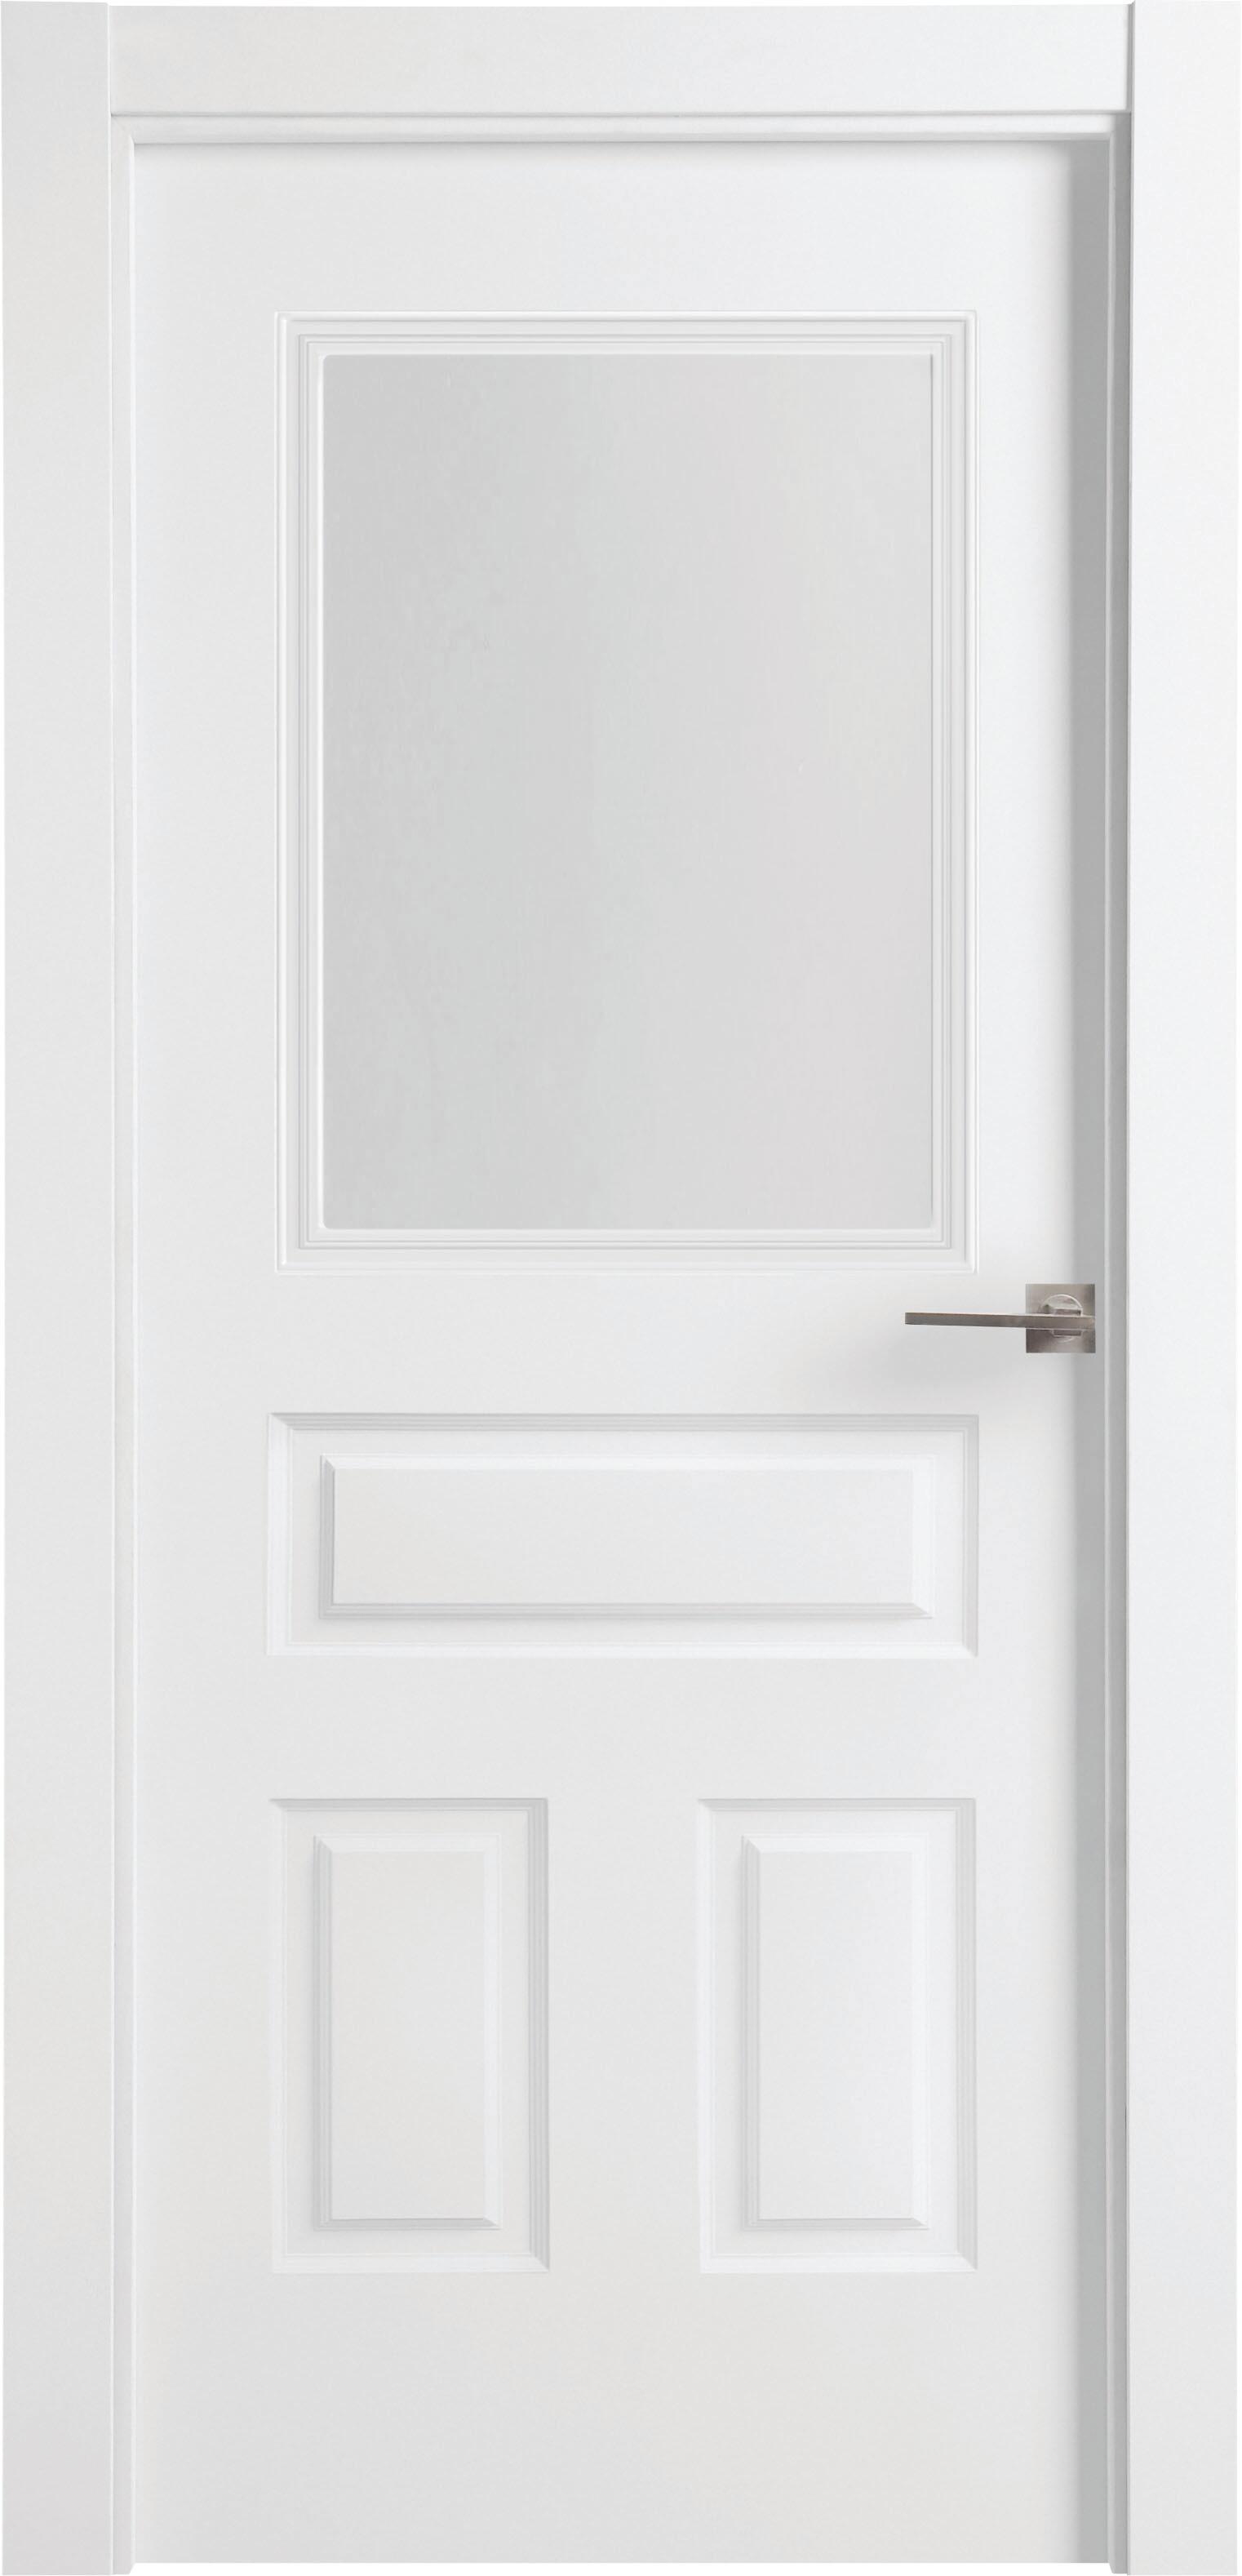 Puerta indiana plus blanco apertura izquierda con cristal 11x92,5cm